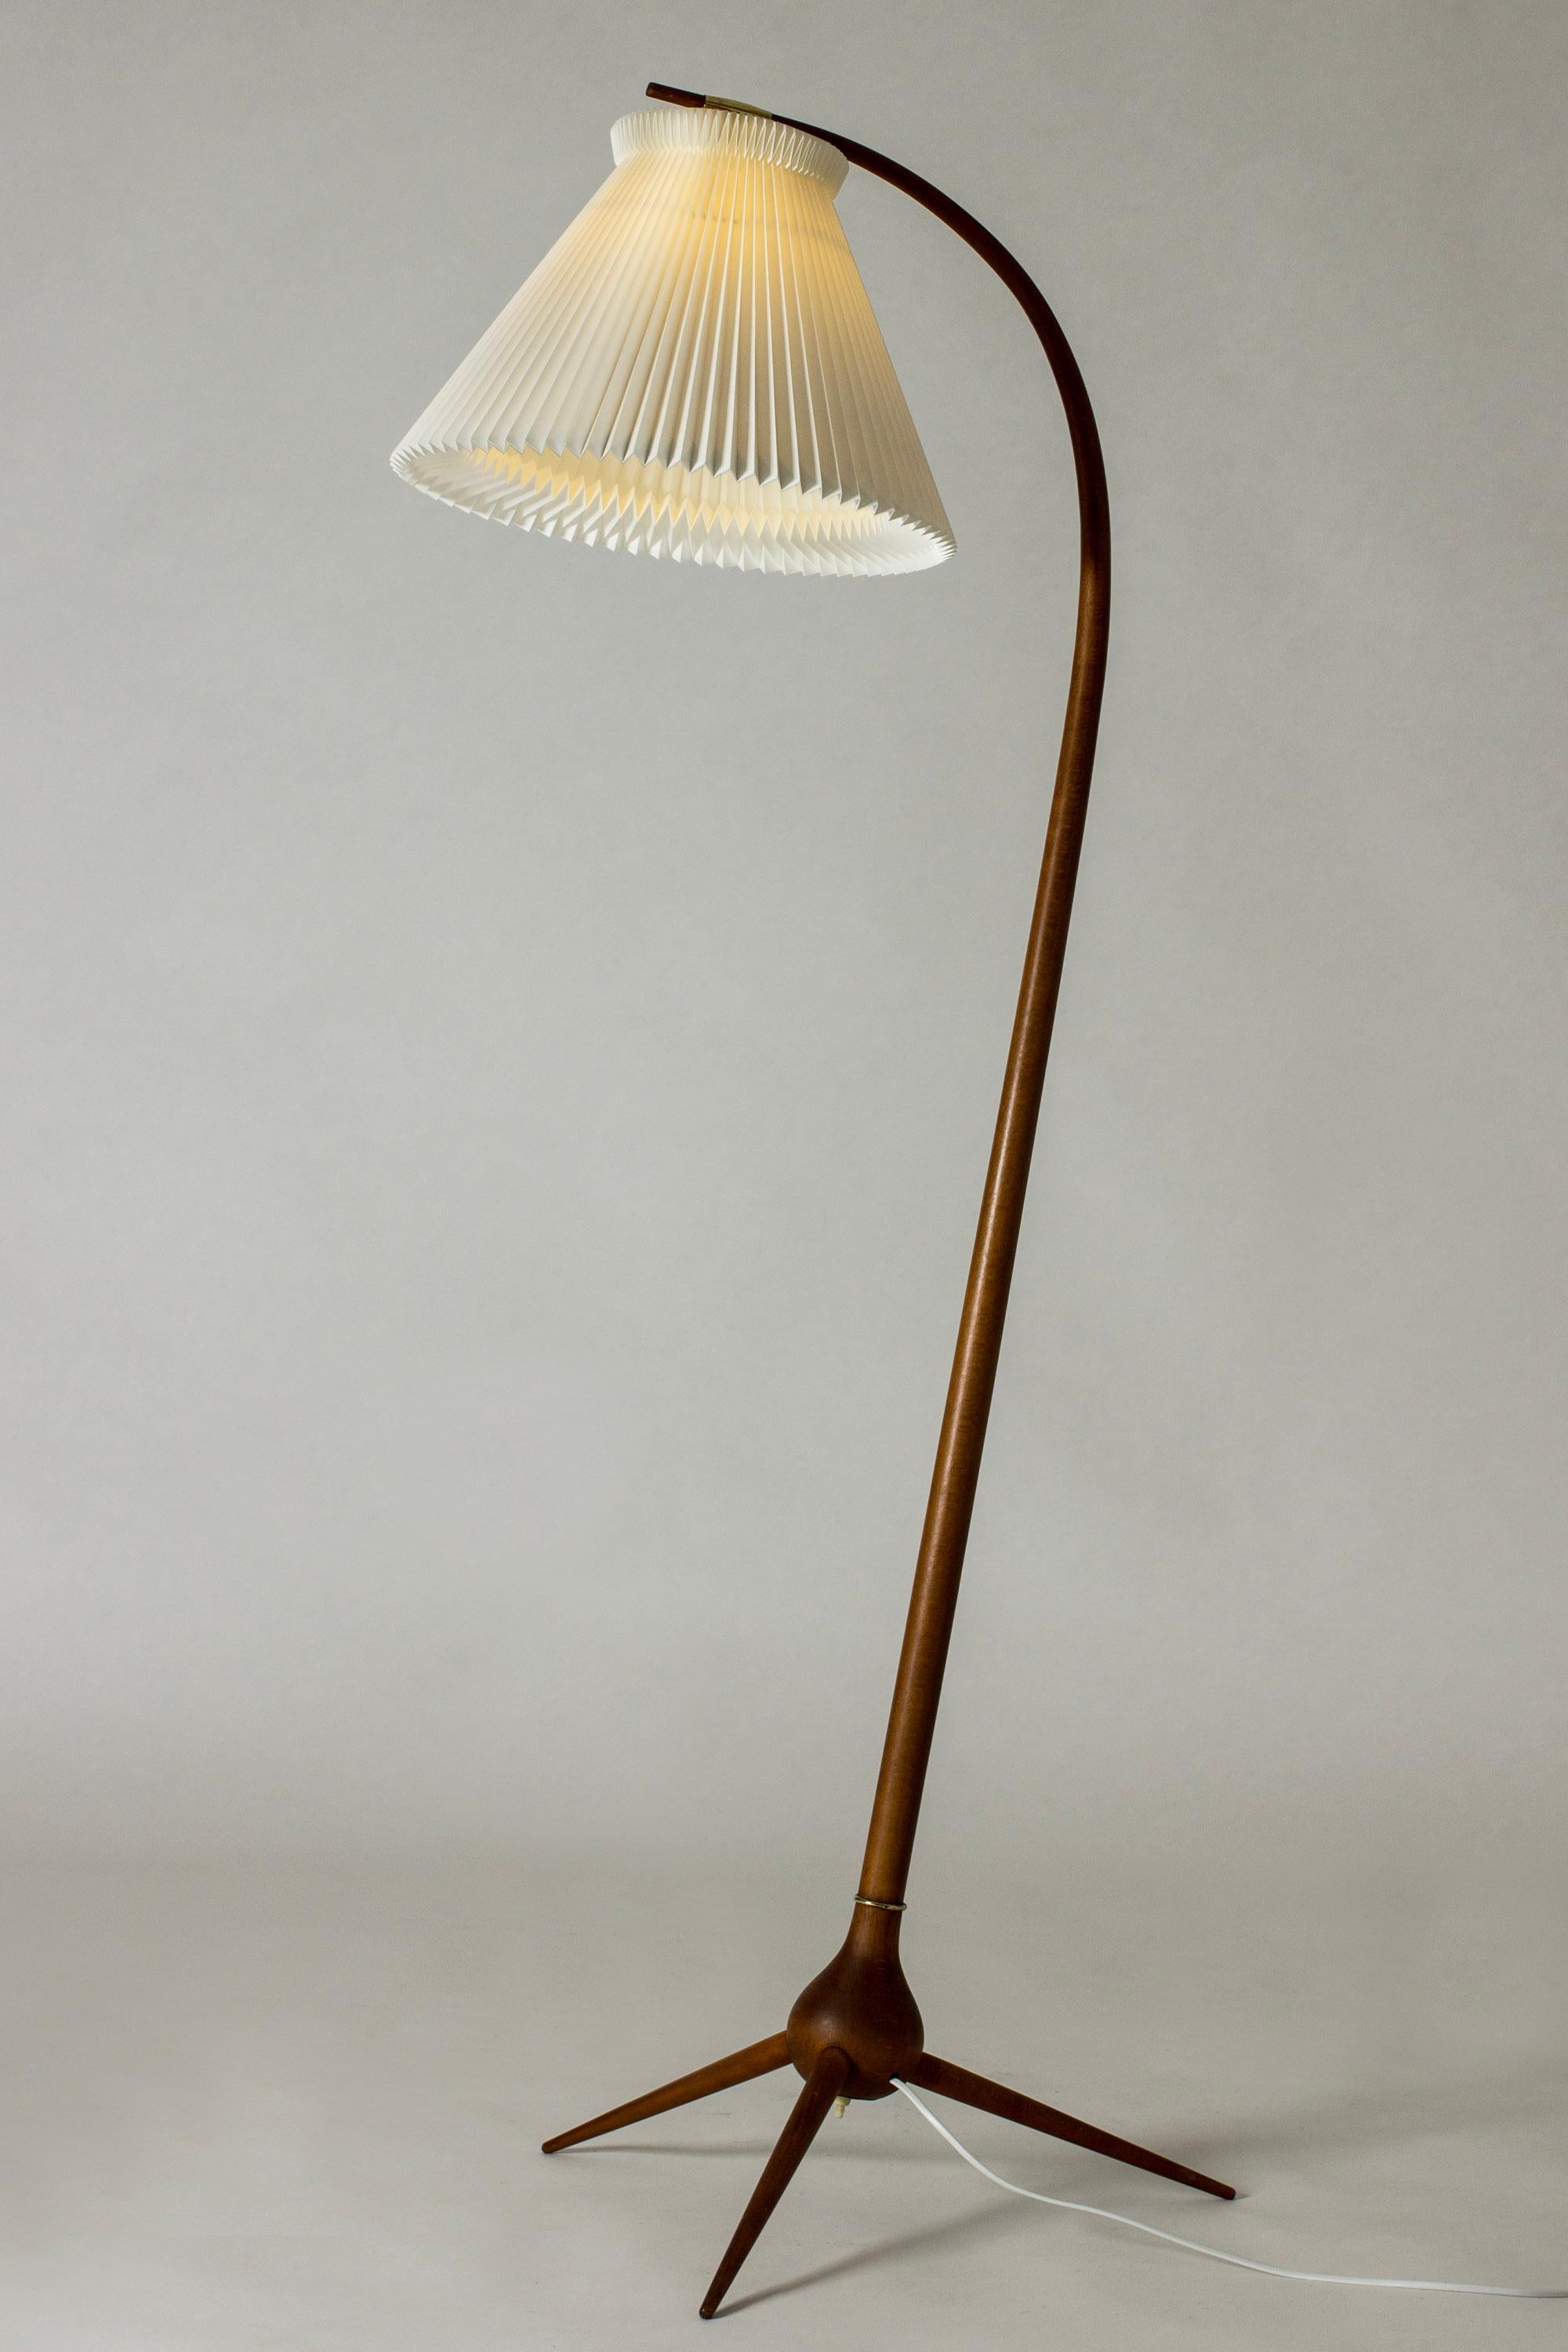 Danish Modernist Teak Floor Lamp 